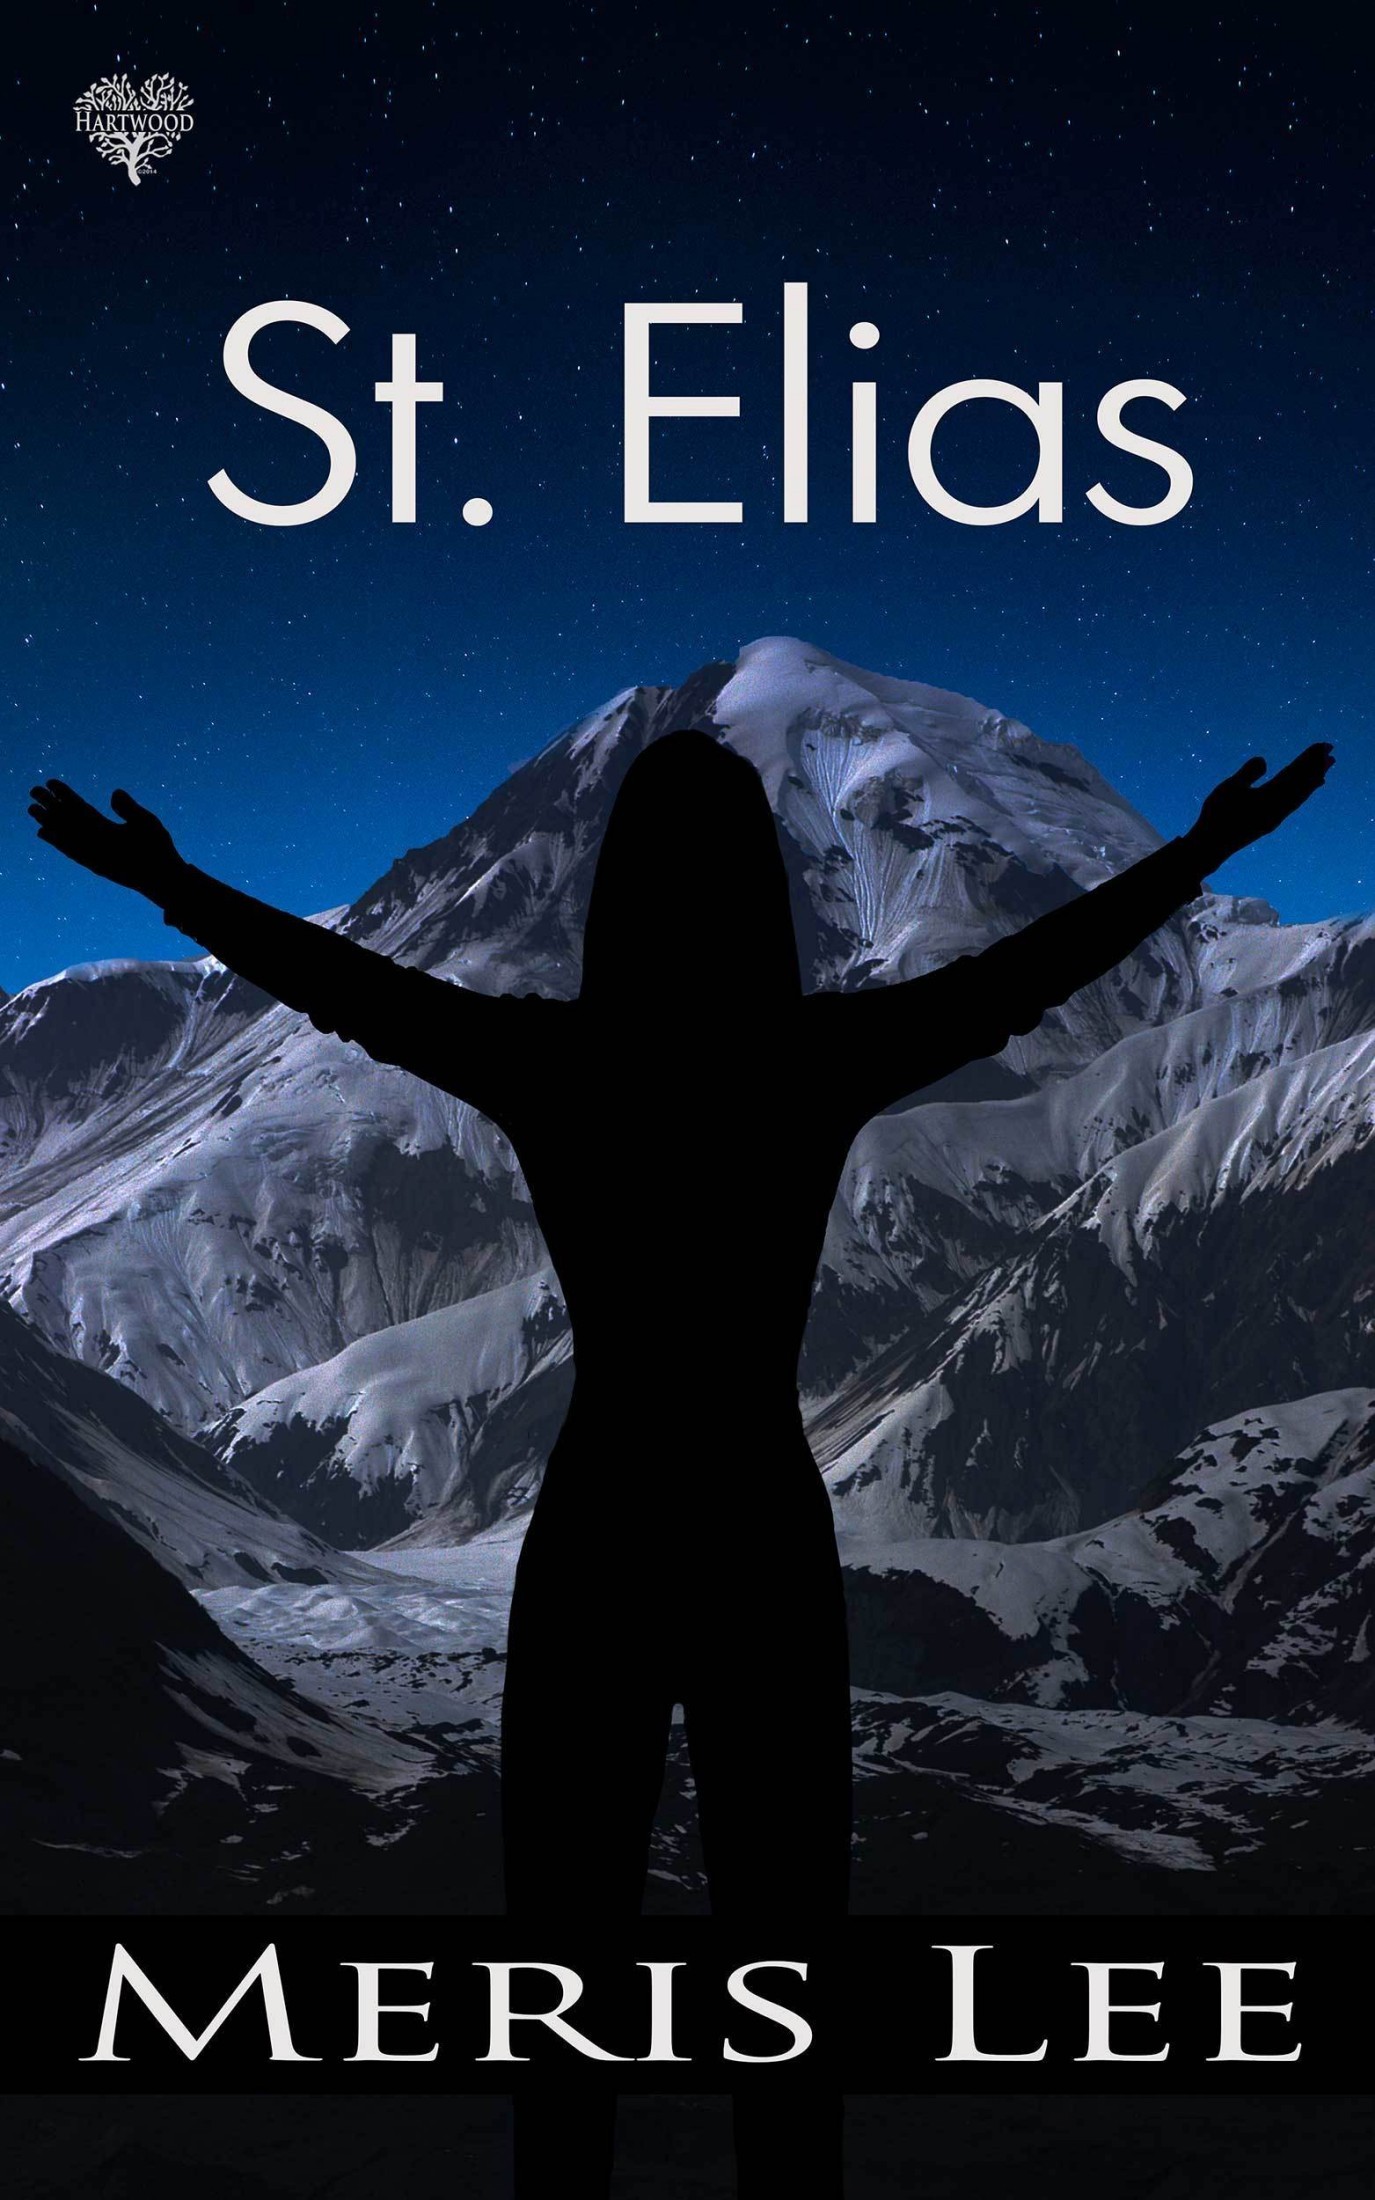 St. Elias